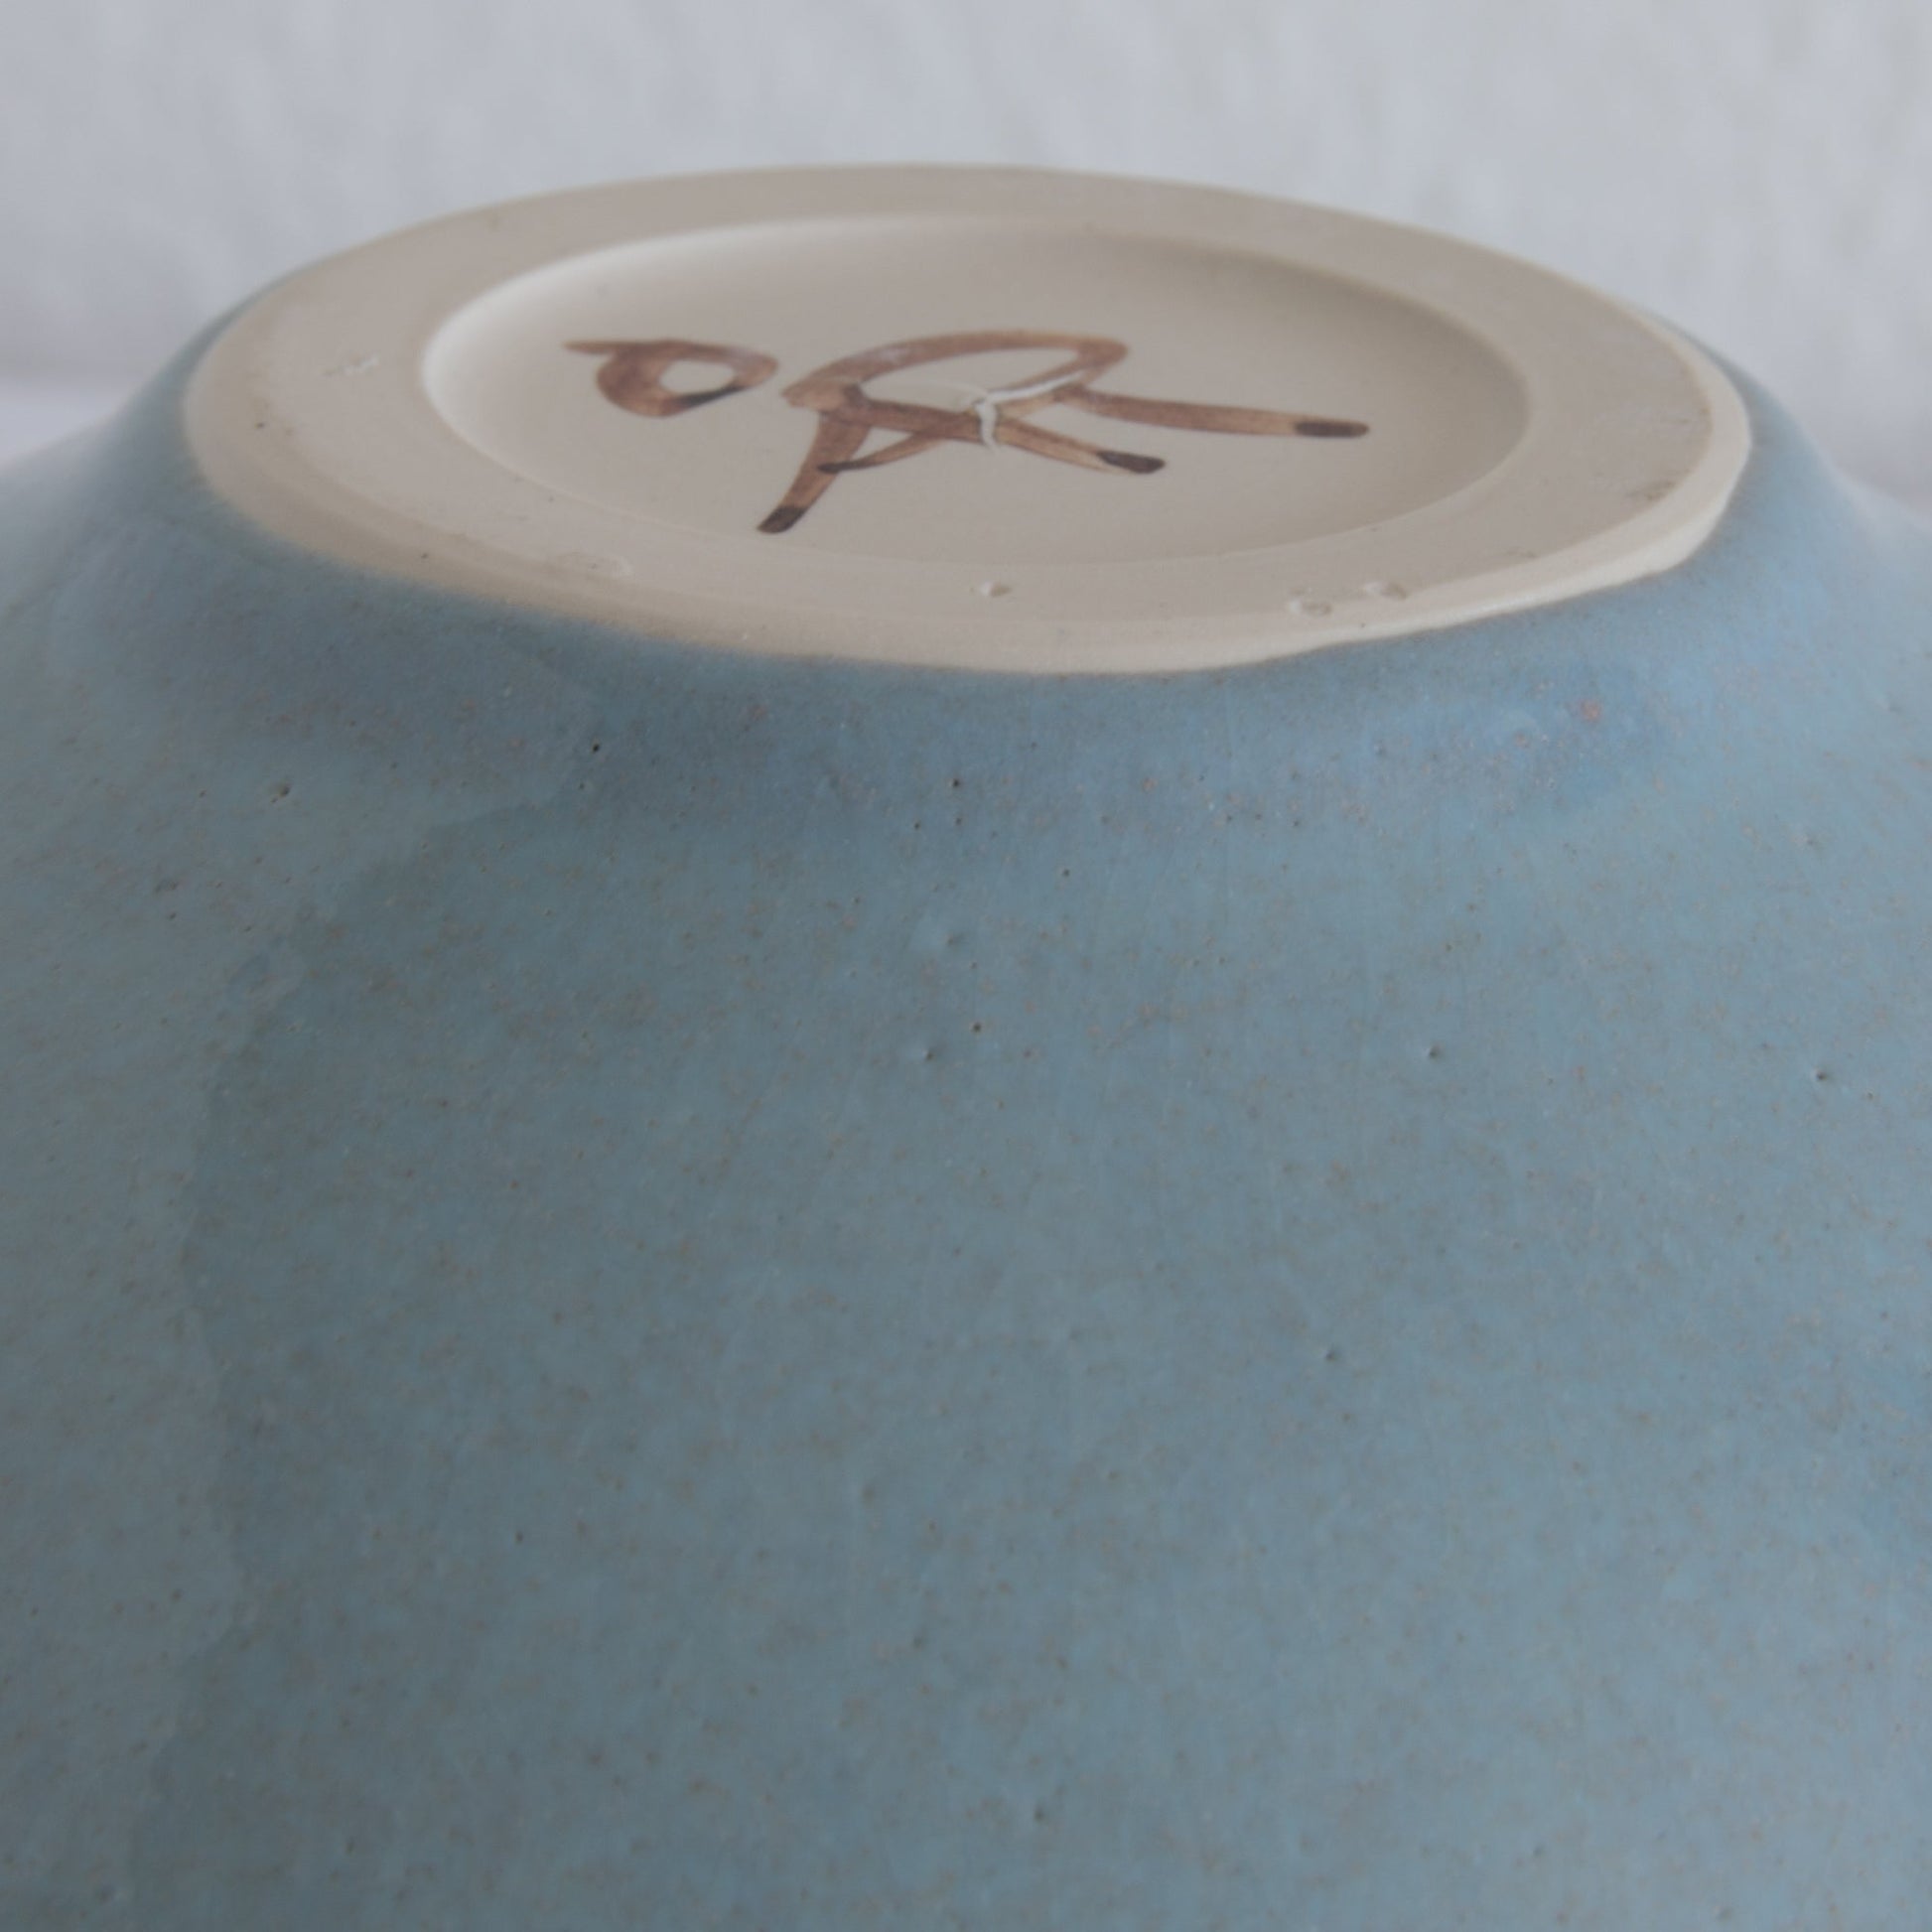 ÅSE RISE Studio Contemporary Light Blue Glazed Stoneware Bowl Mollaris.com 